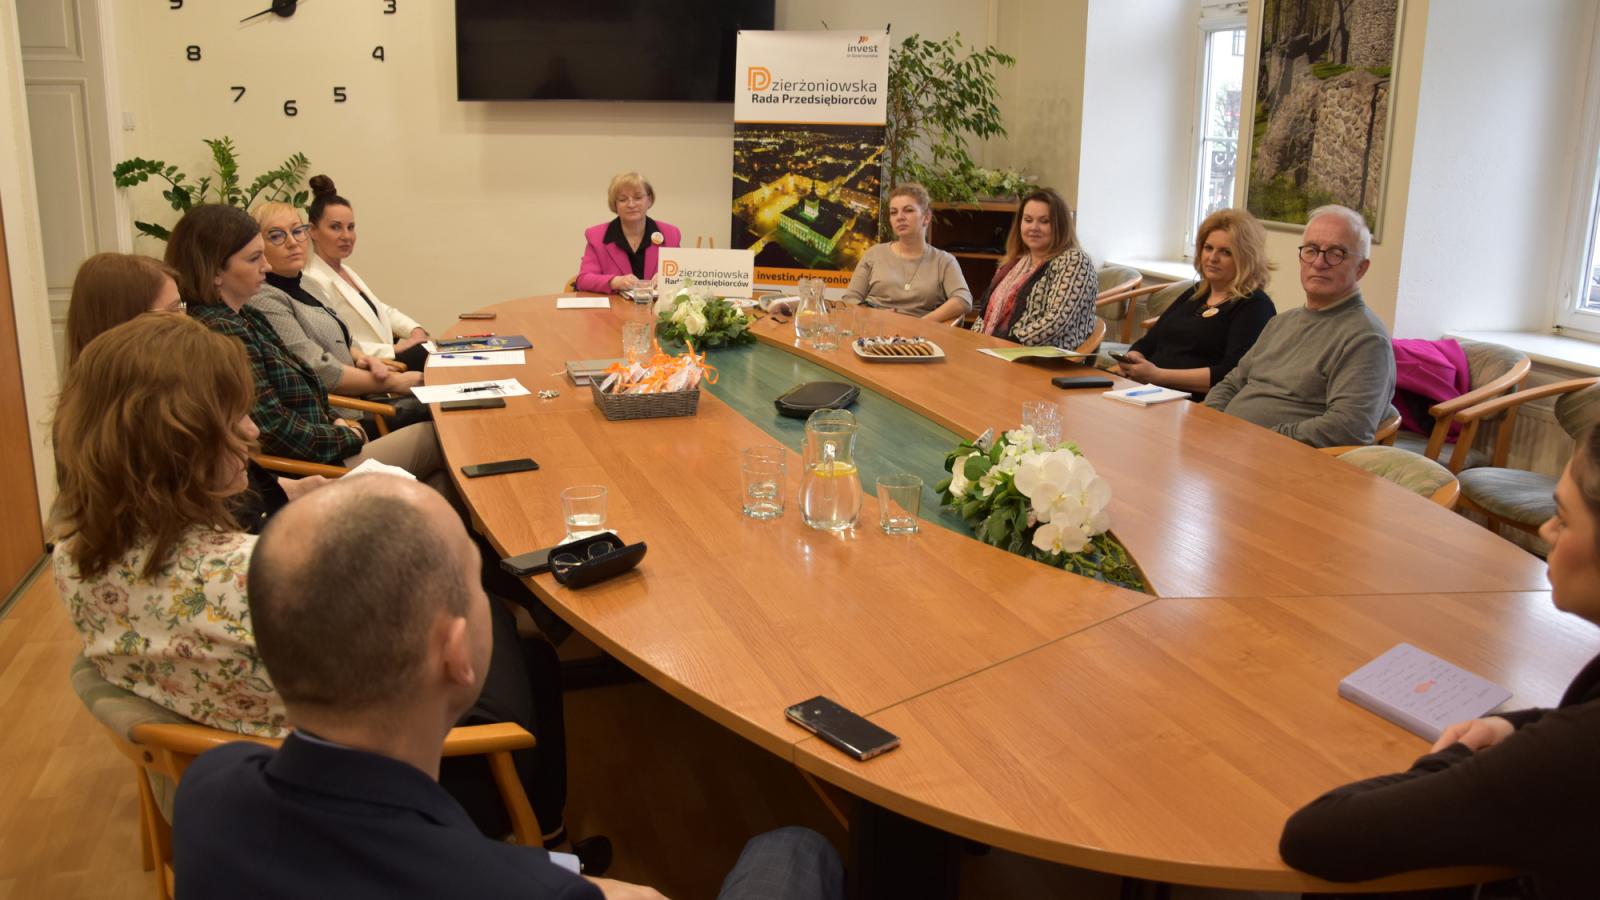 Spotkanie Dzierżoniowskiej Rady Przedsiębiorców